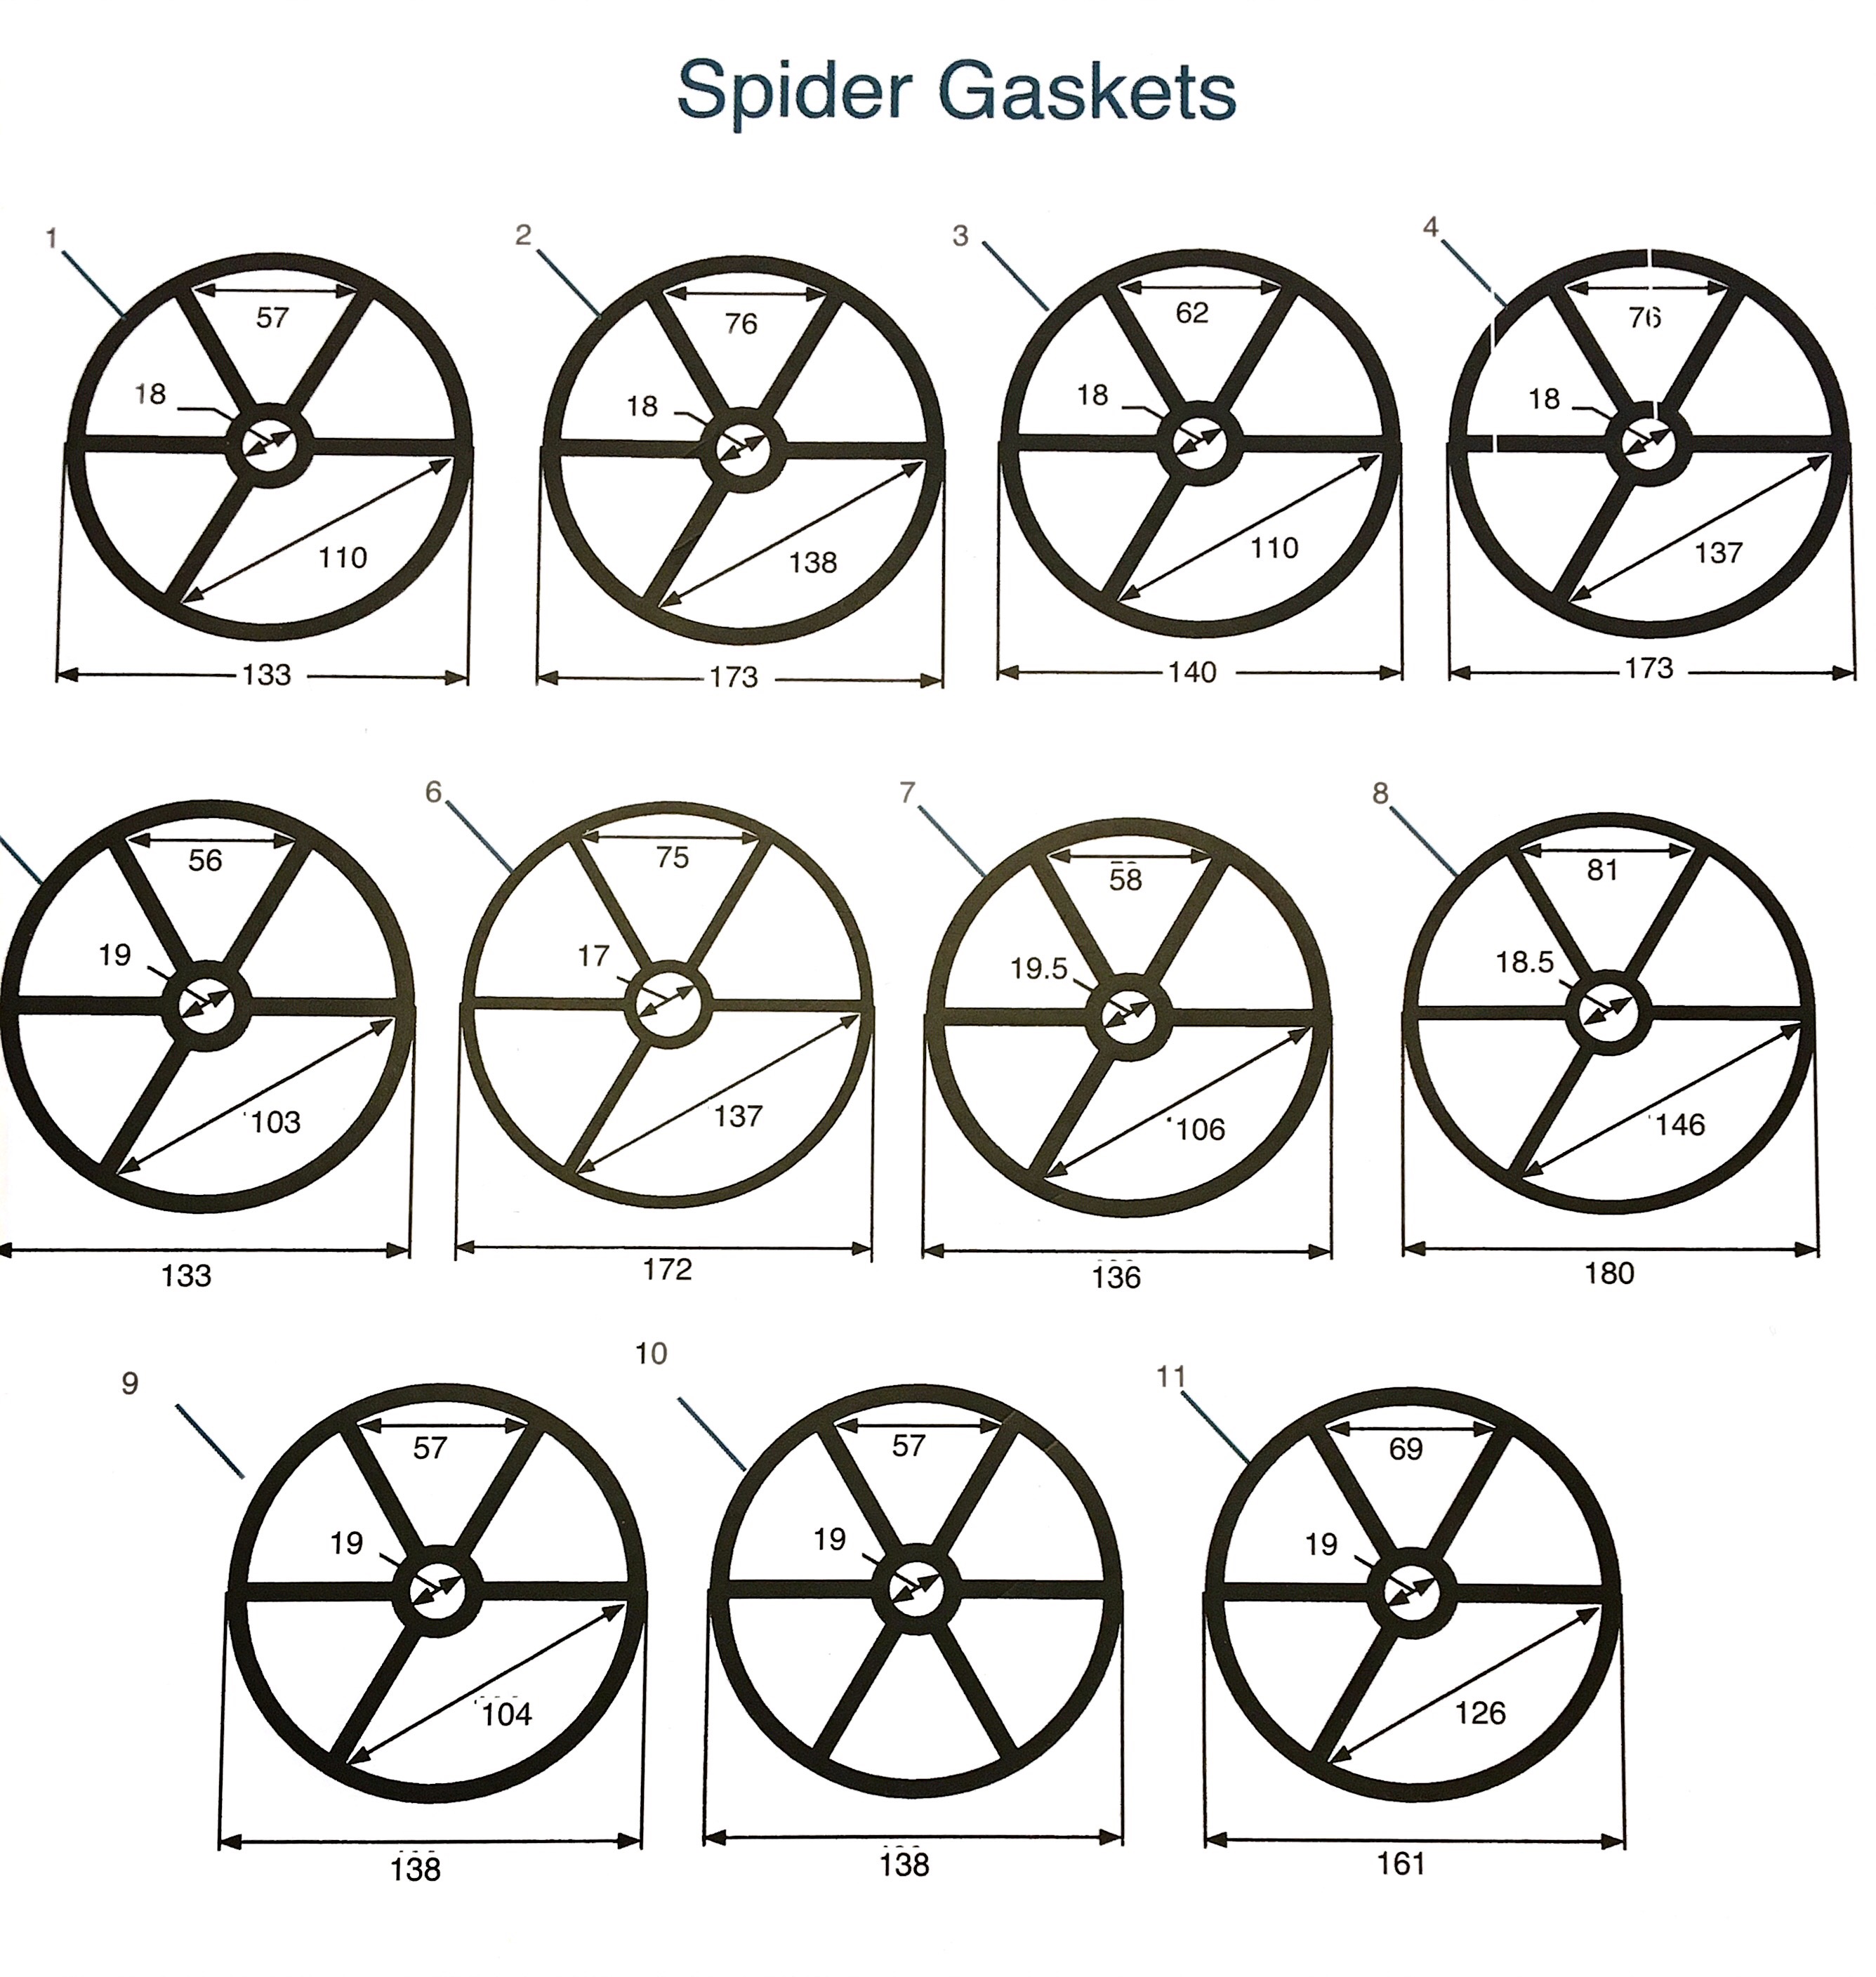 All Spider Gaskets